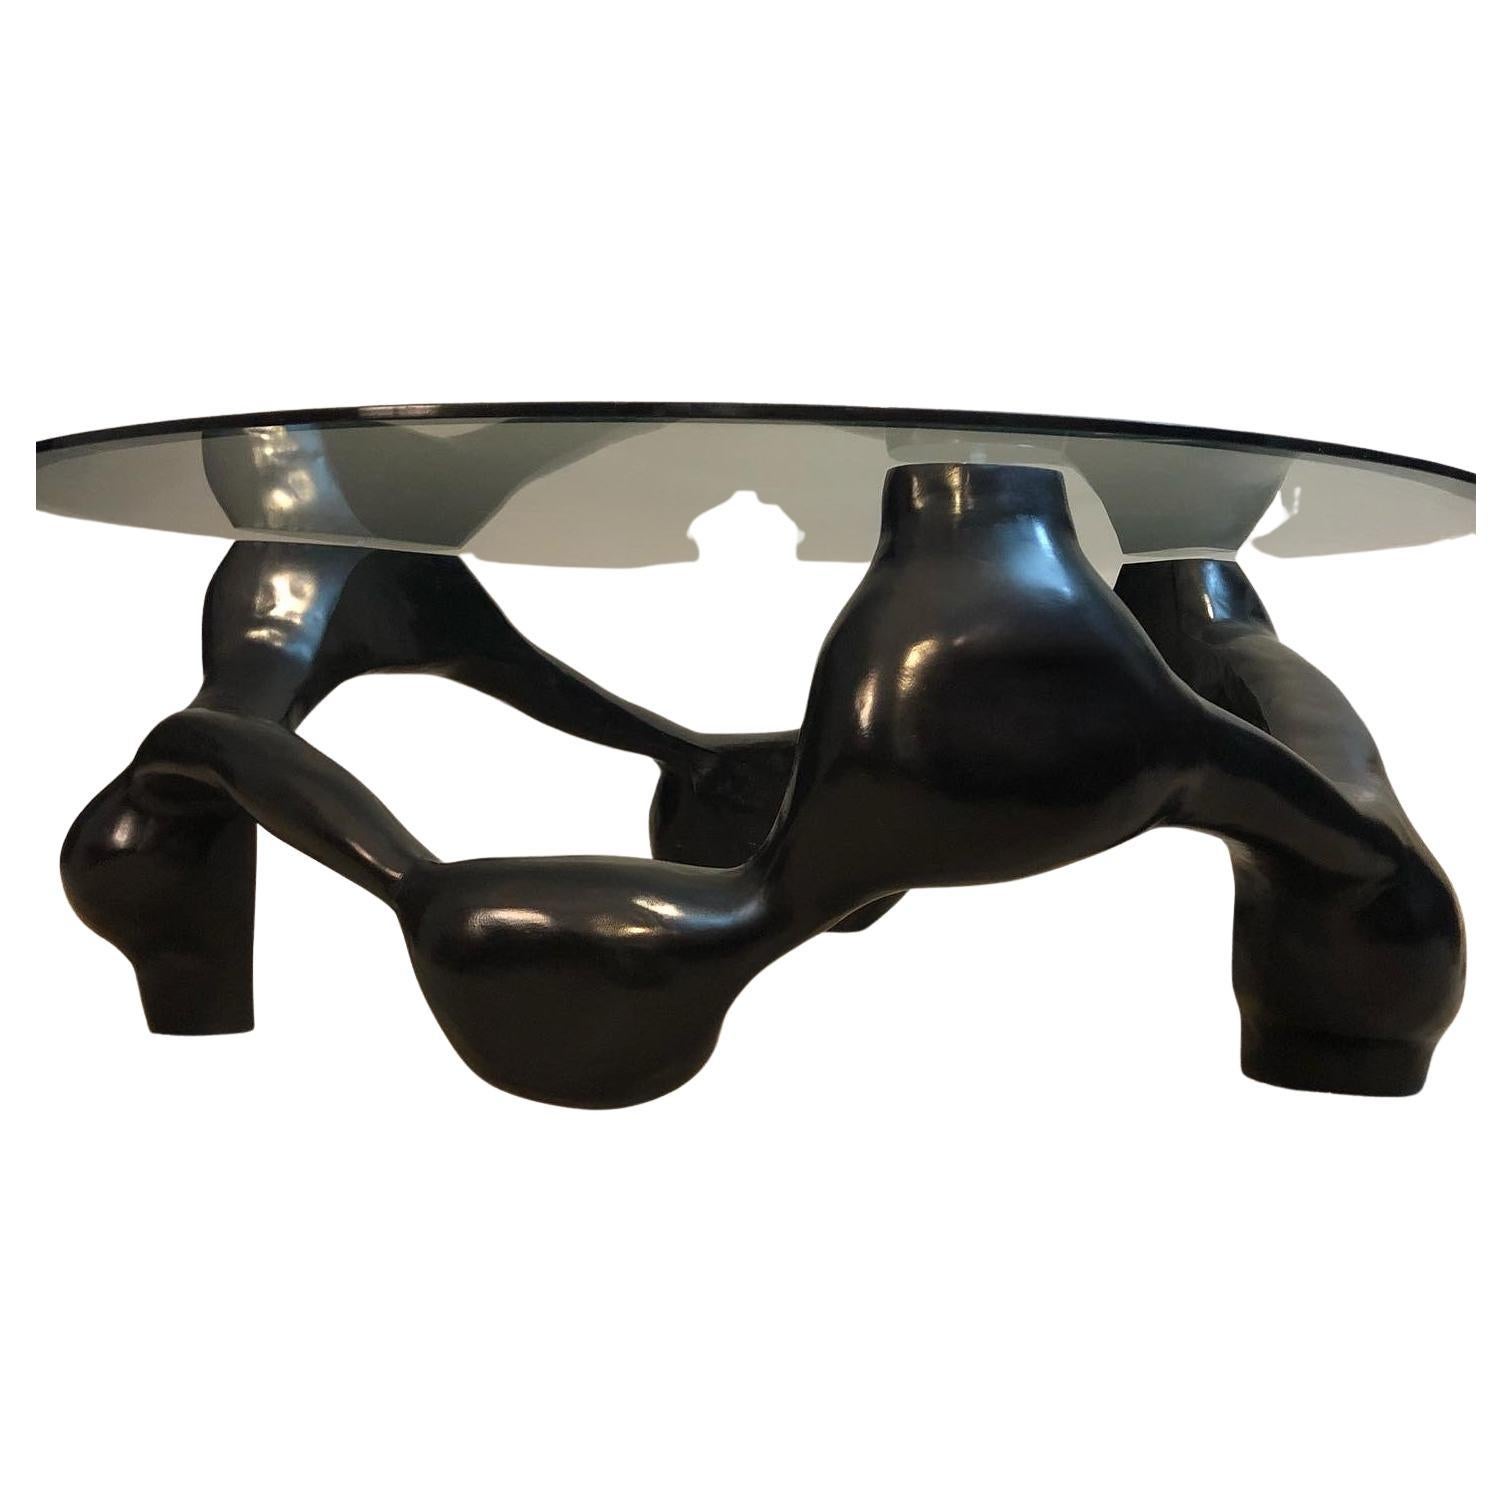 Table basse à nœuds en peuplier moderne noir, sculptée à la main